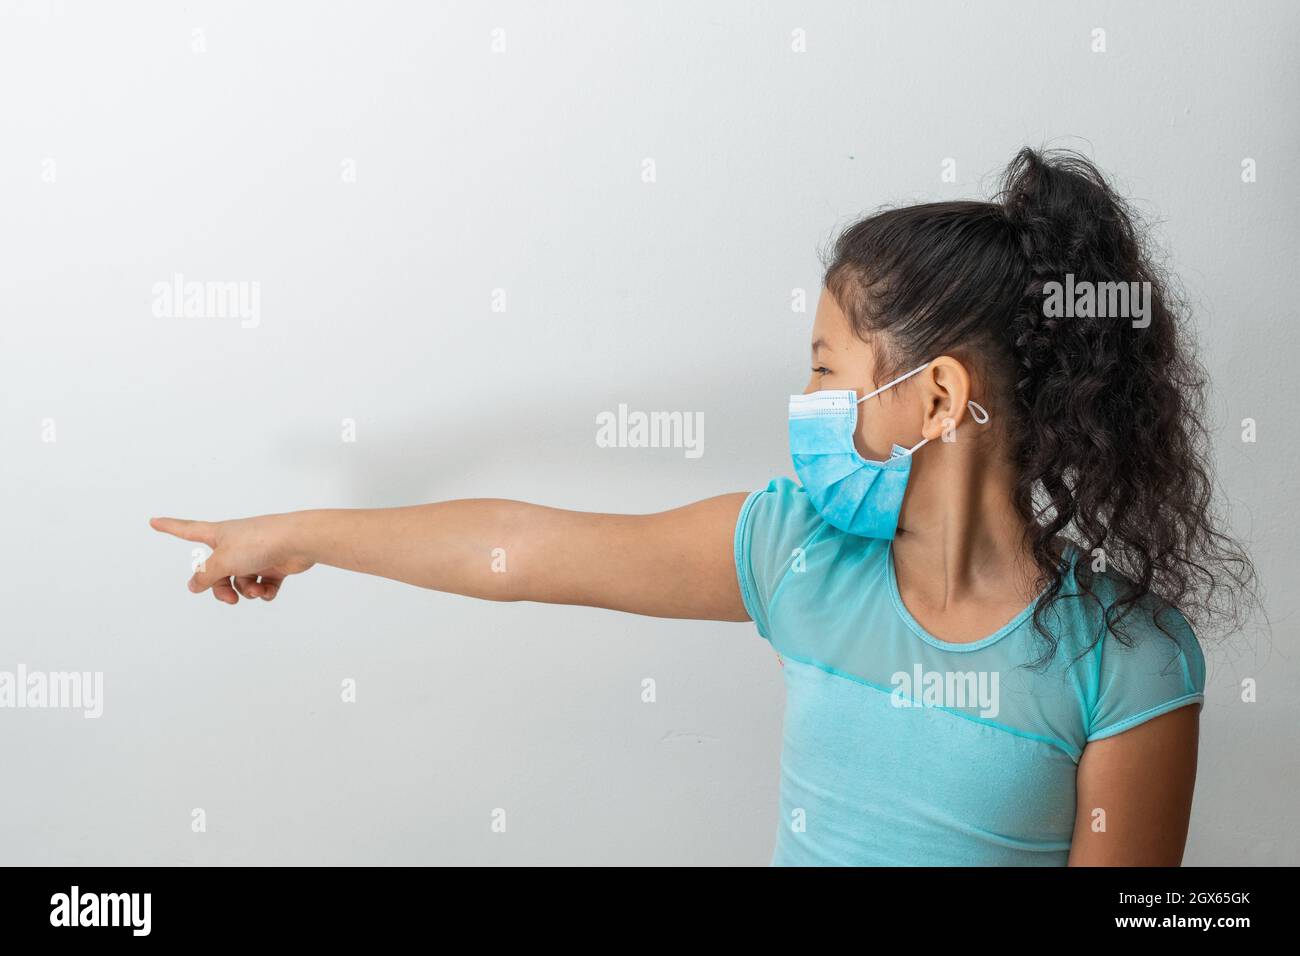 bambina (8 anni) seduta con la mano destra che punta a destra, ragazza marrone che stuzzica un'altra persona con una maschera chirurgica blu. Medico, pha Foto Stock